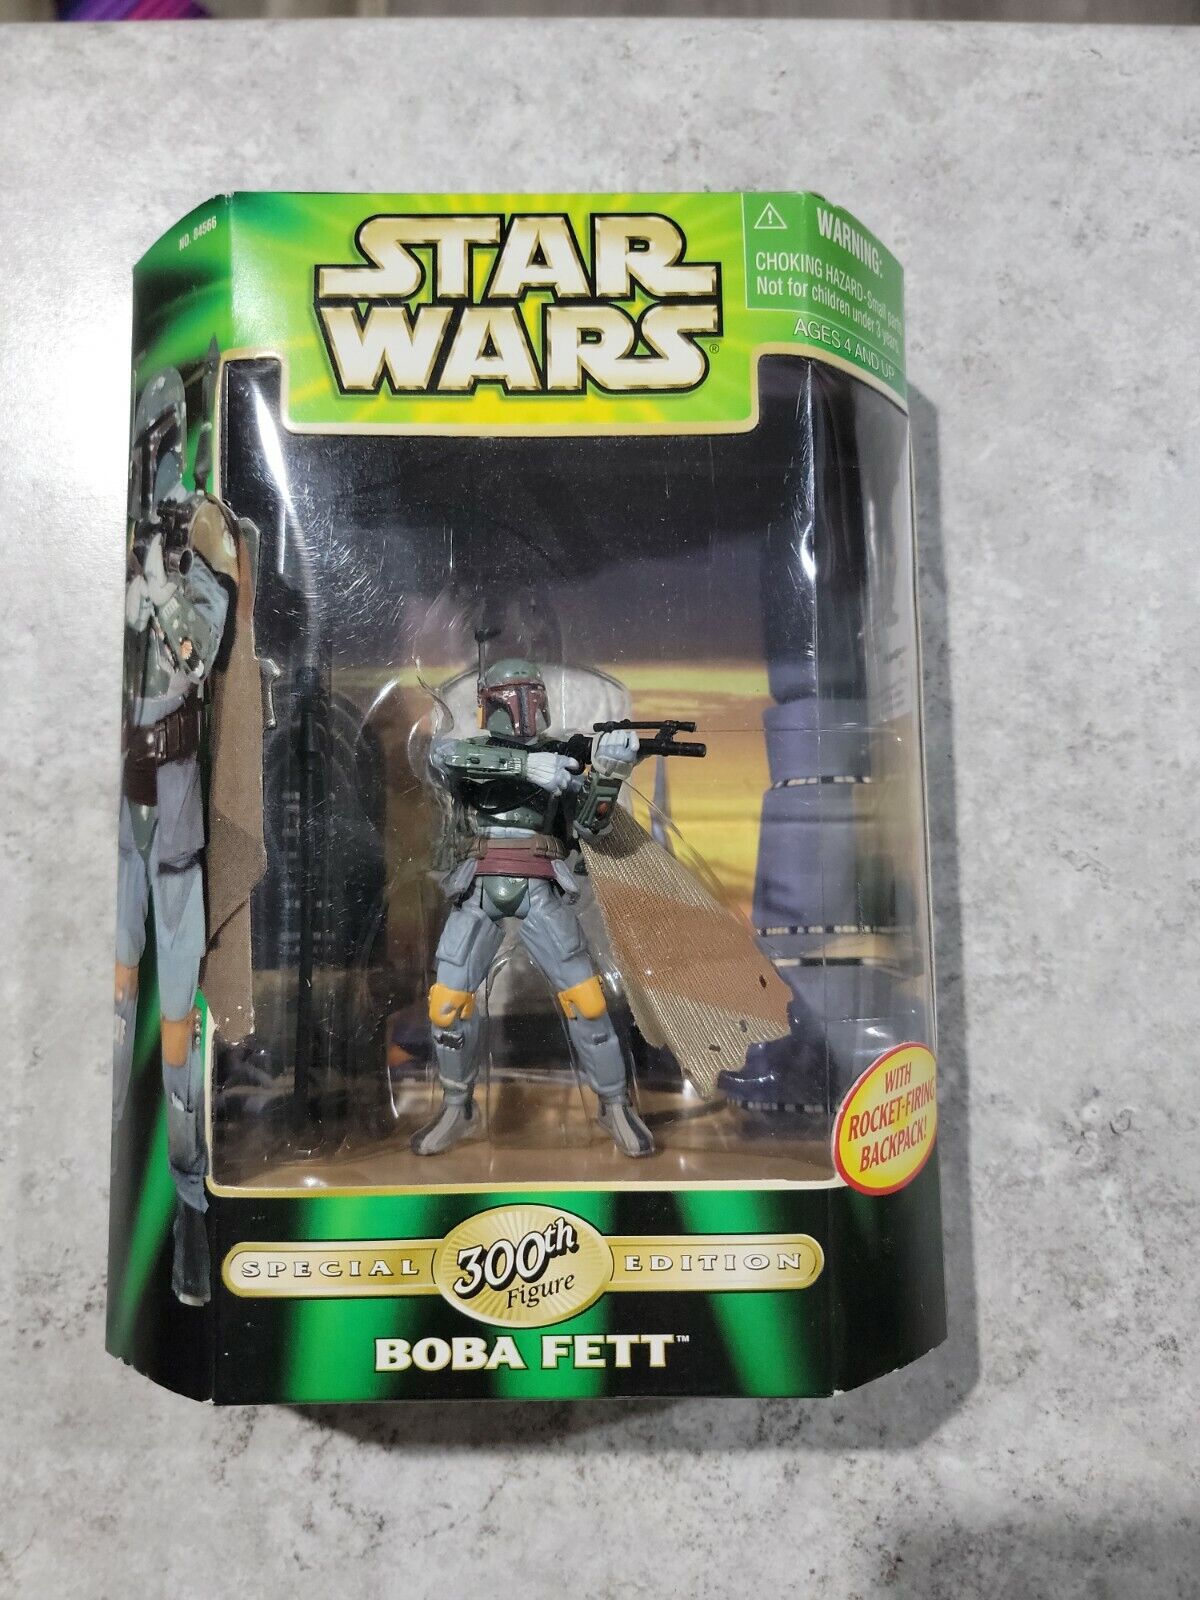 2000 Hasbro Star Wars Special 300th Figure Edition Boba Fett